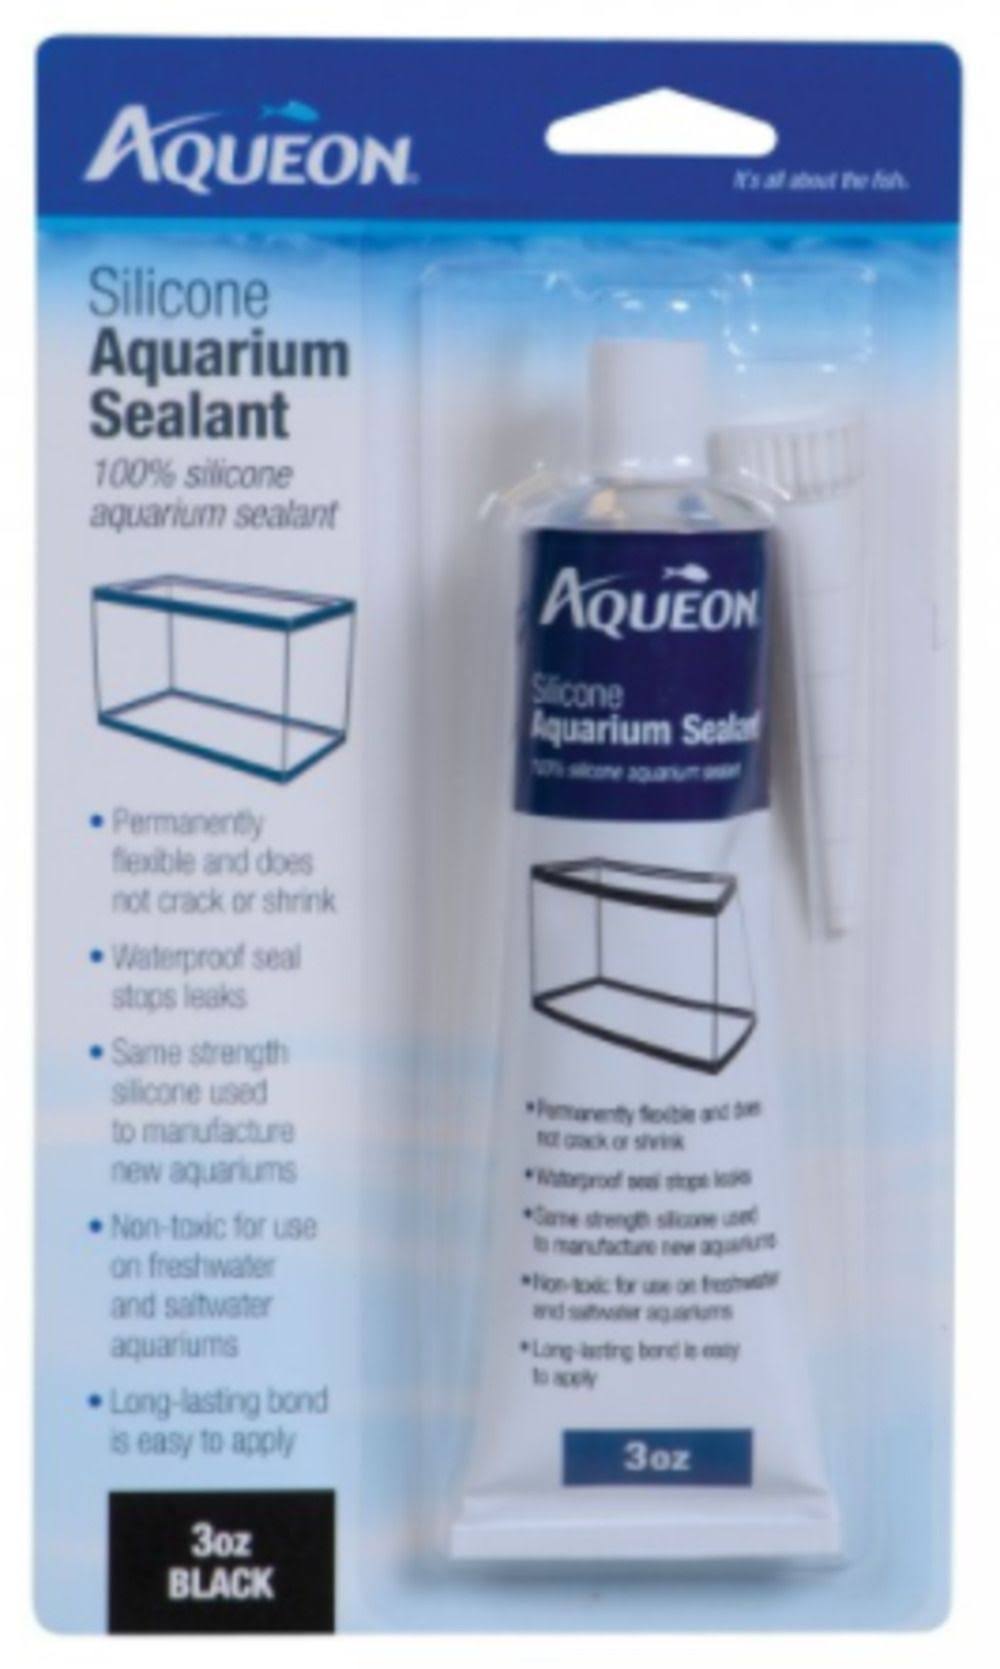 Aqueon Silicone Aquarium Sealant - Black, 3oz